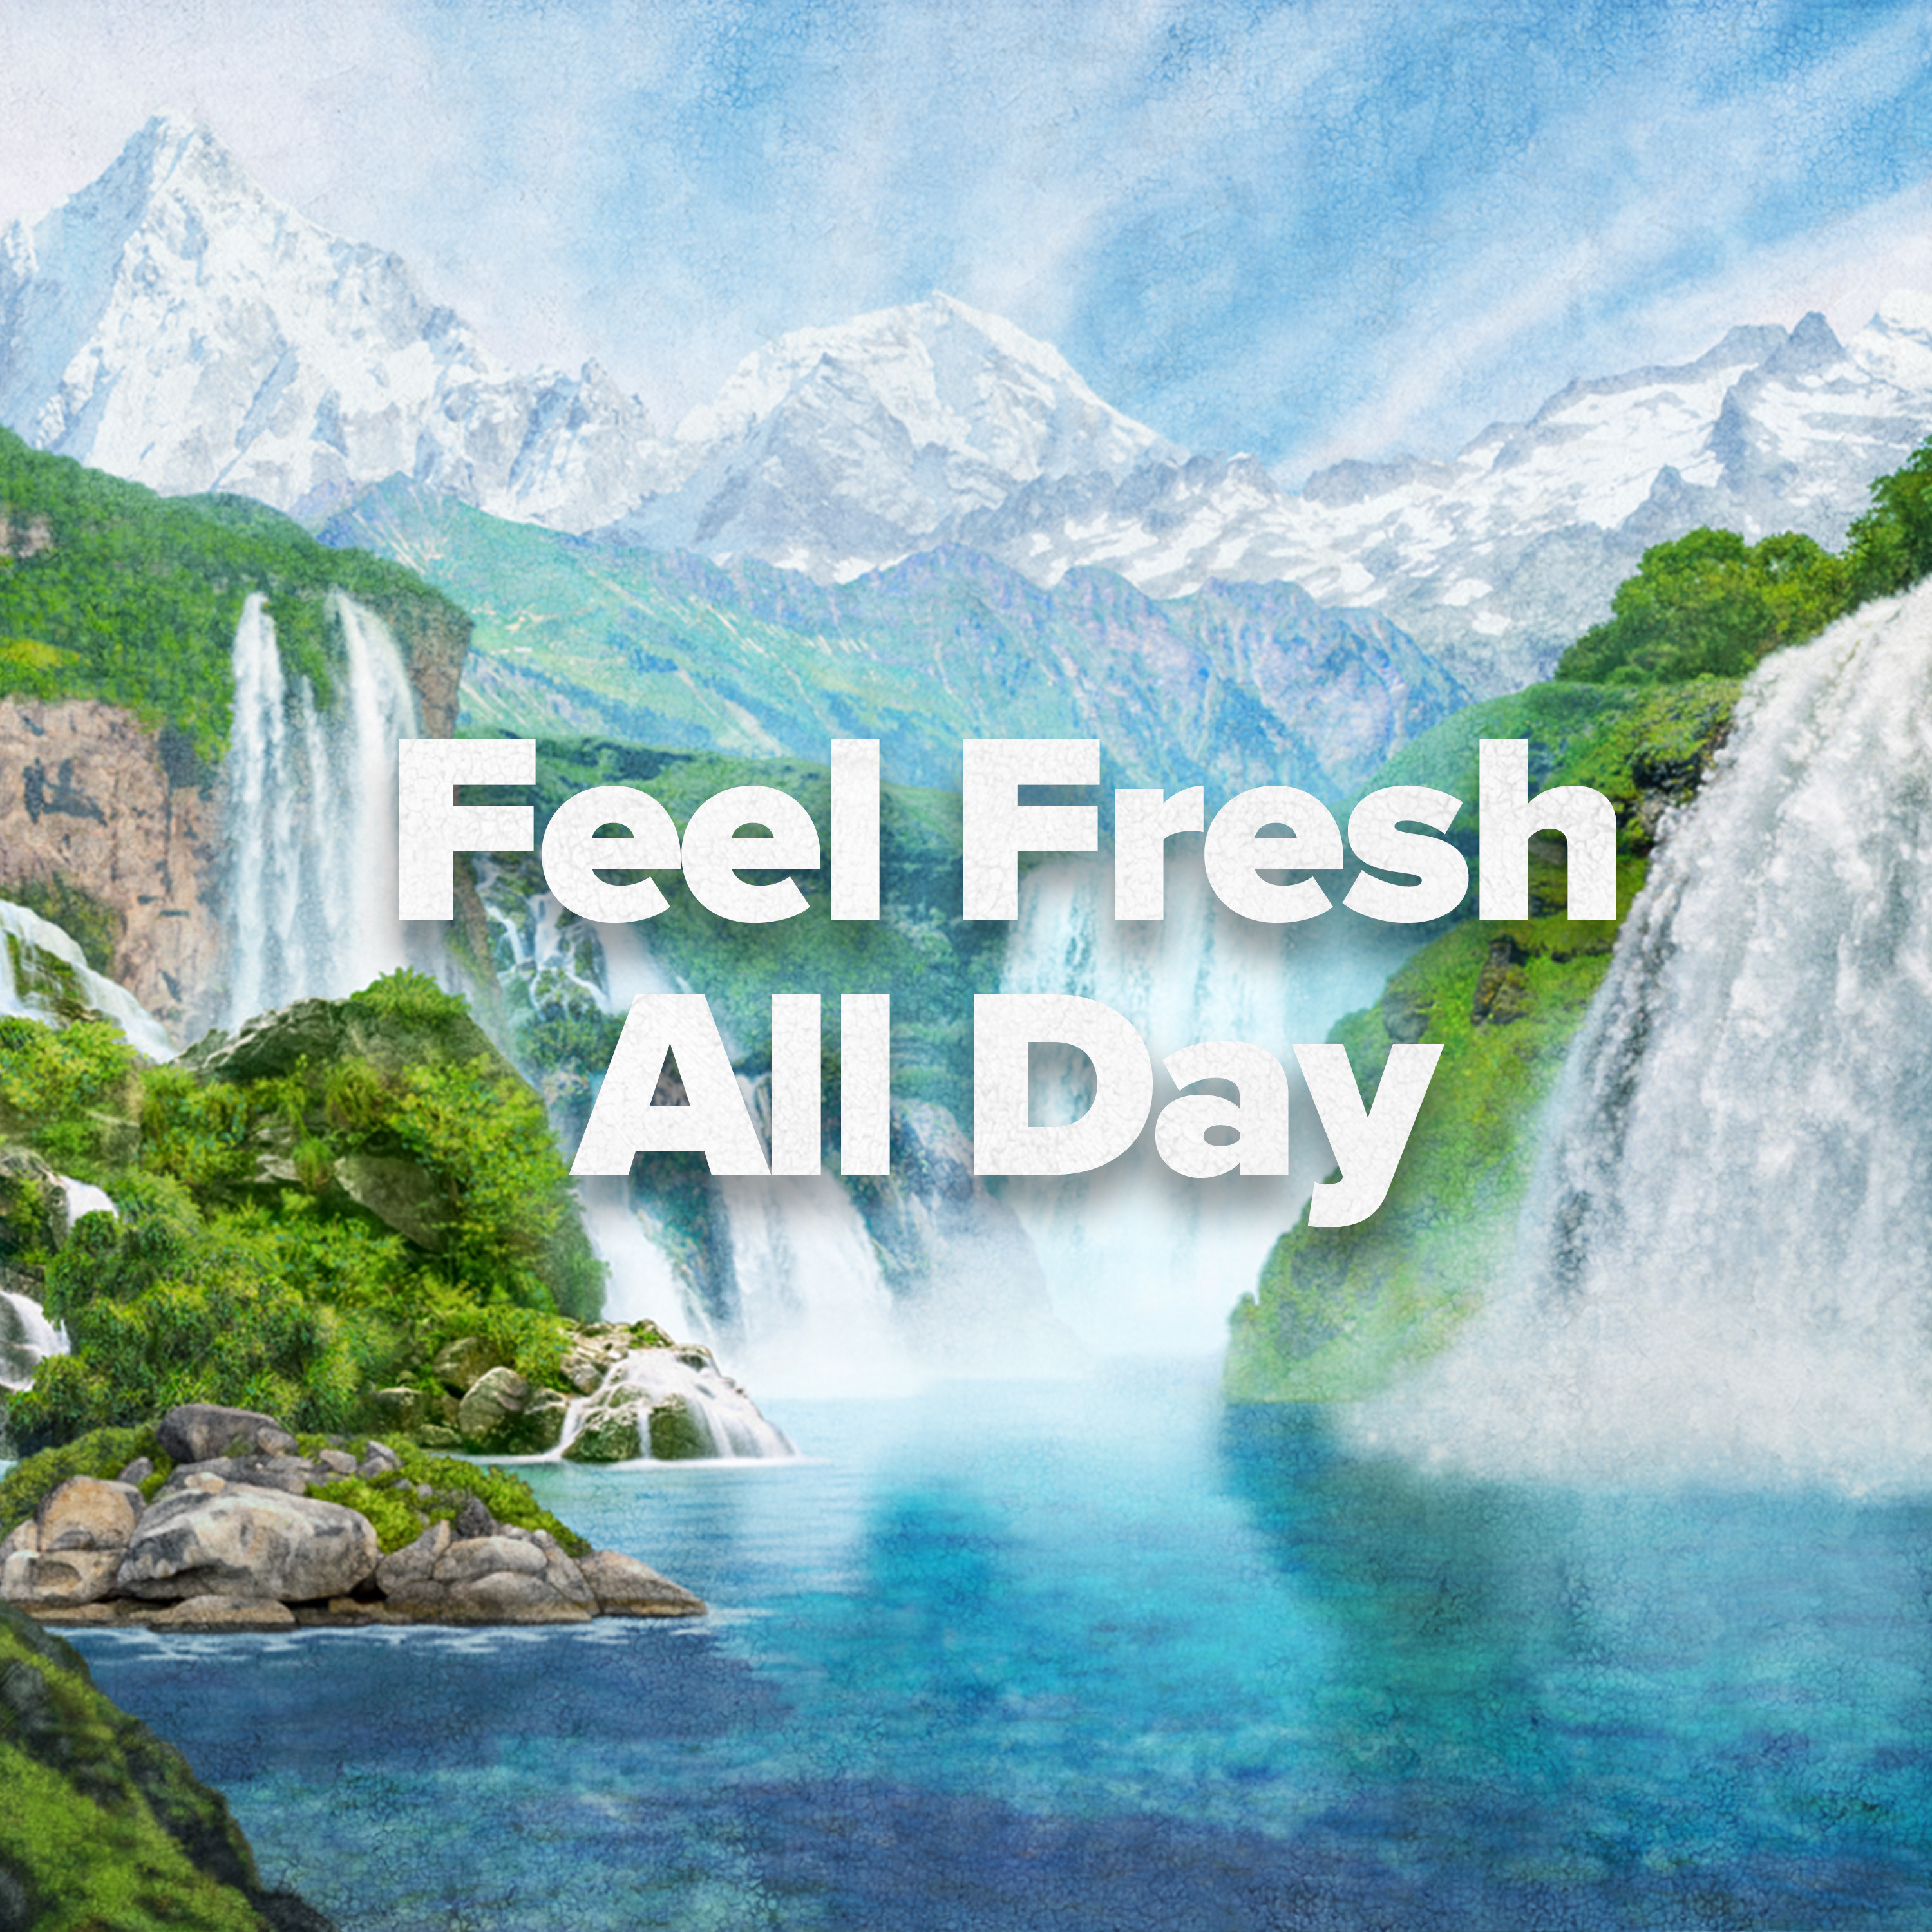 Irish Spring Aloe Mist Deodorant Bar Soap for Men, Feel Fresh All Day, 3.7 oz, 12 Pack - image 4 of 23